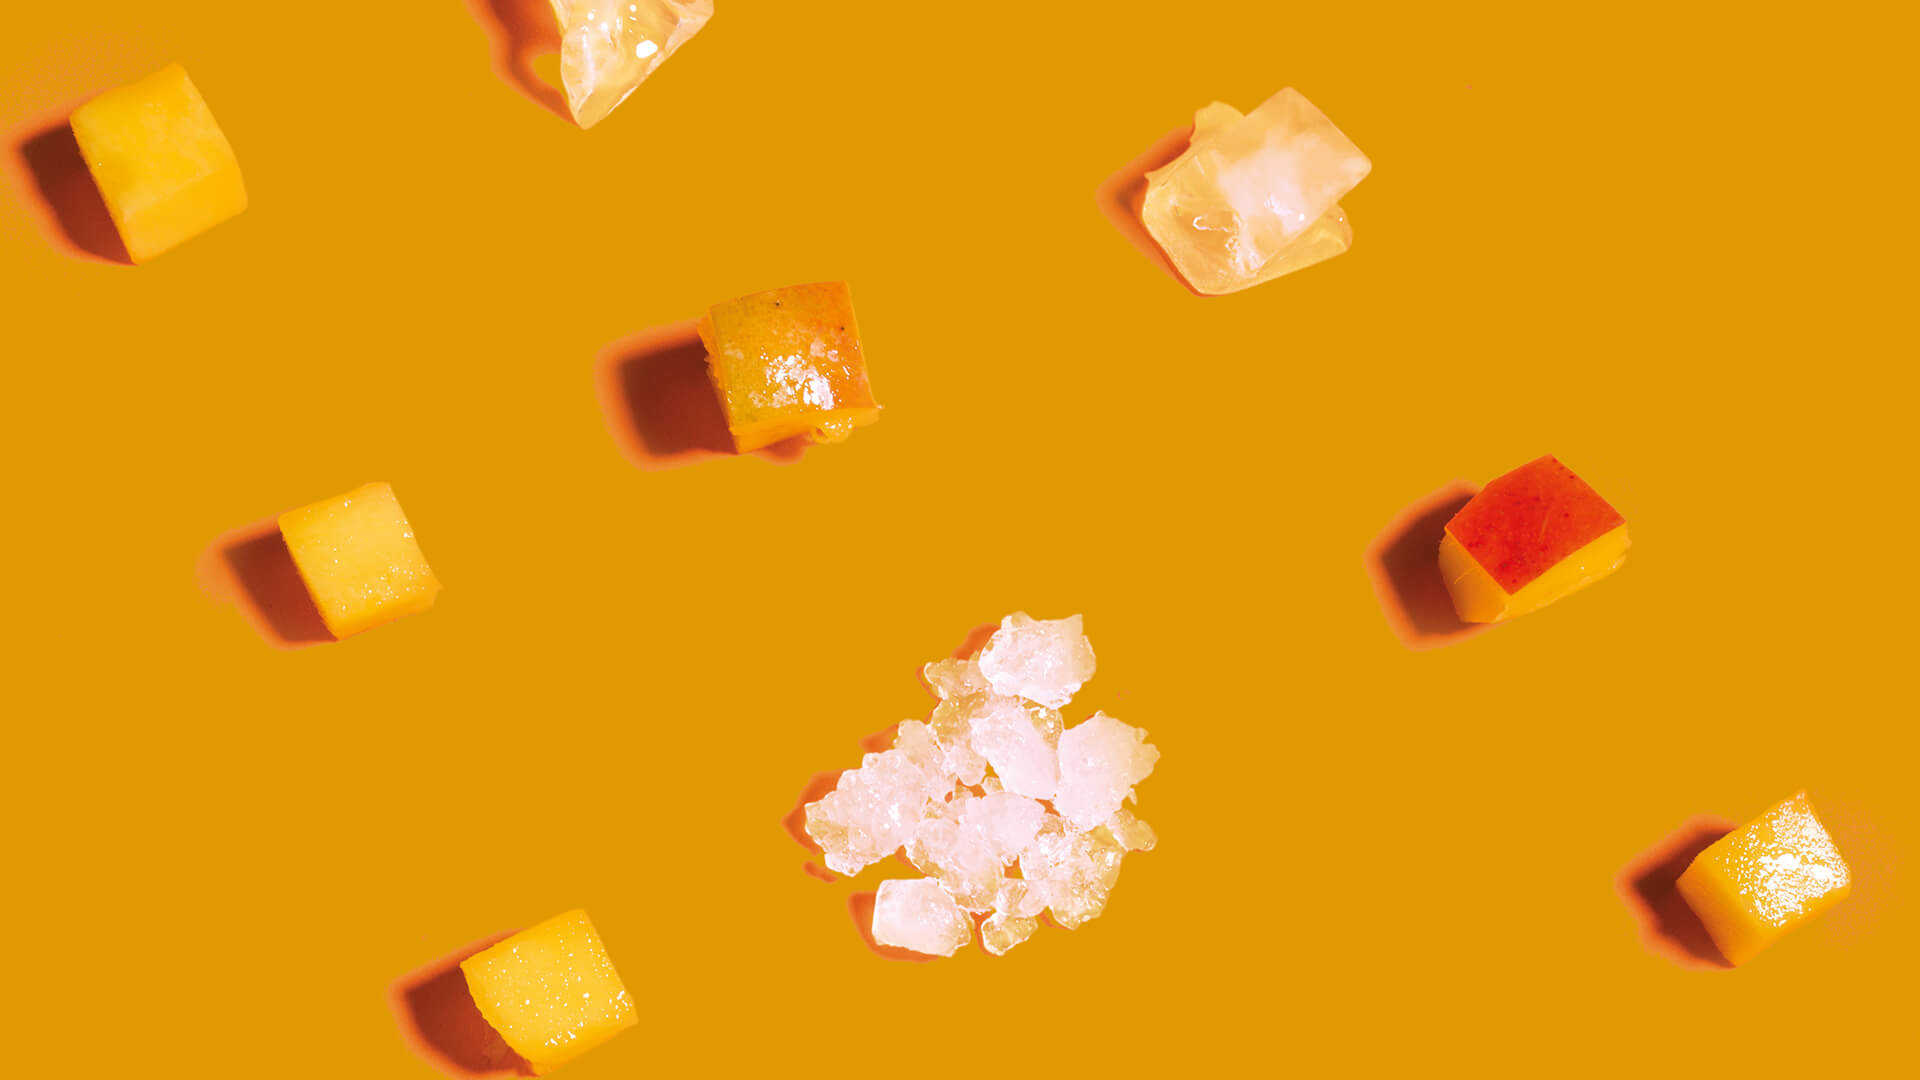 Icematic Mango - Depósitos de hielo